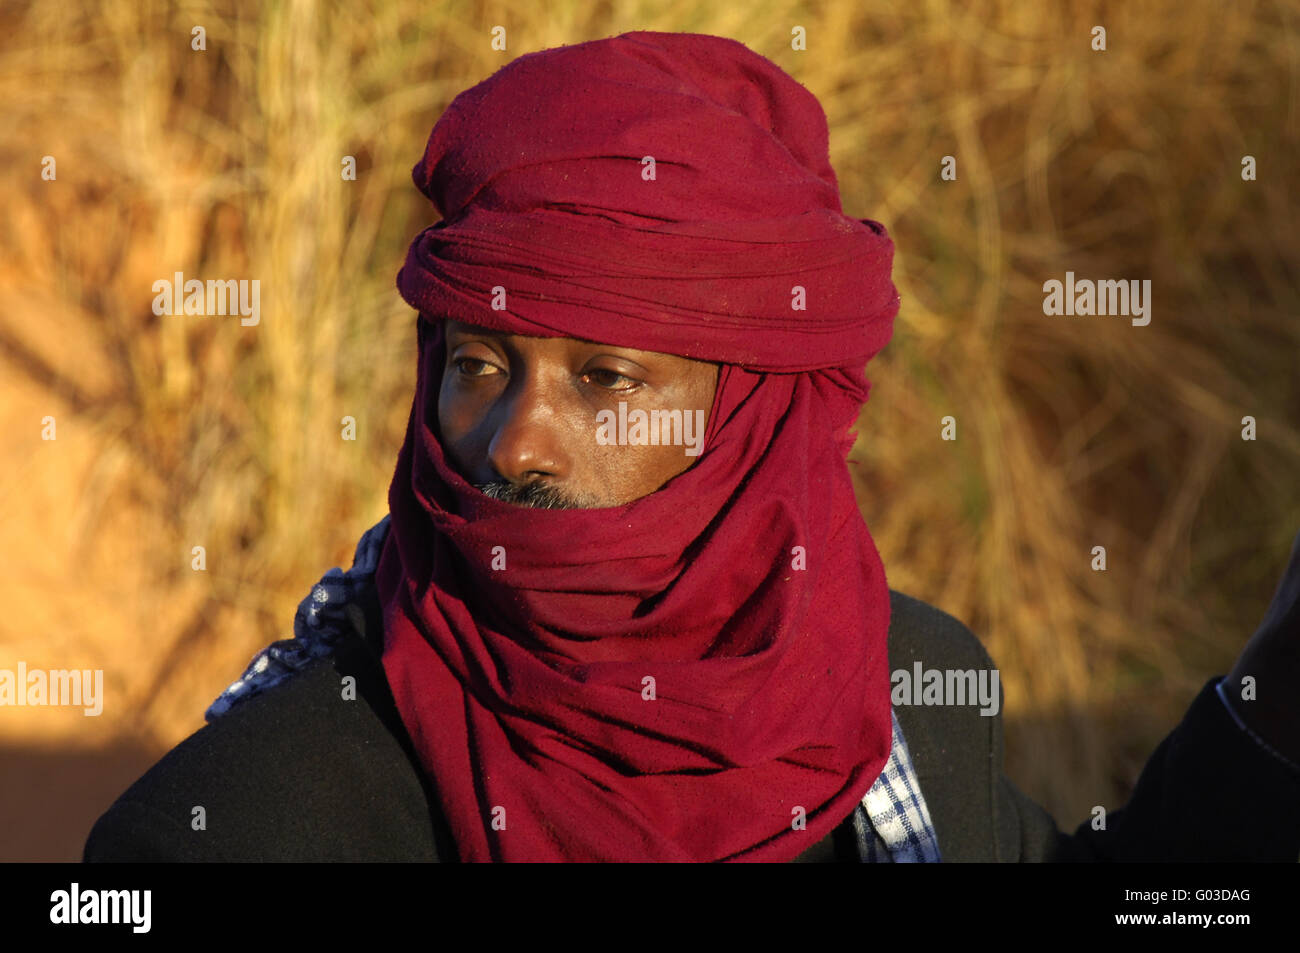 Homme touareg avec un chech rouge, désert du Sahara, la Libye Banque D'Images